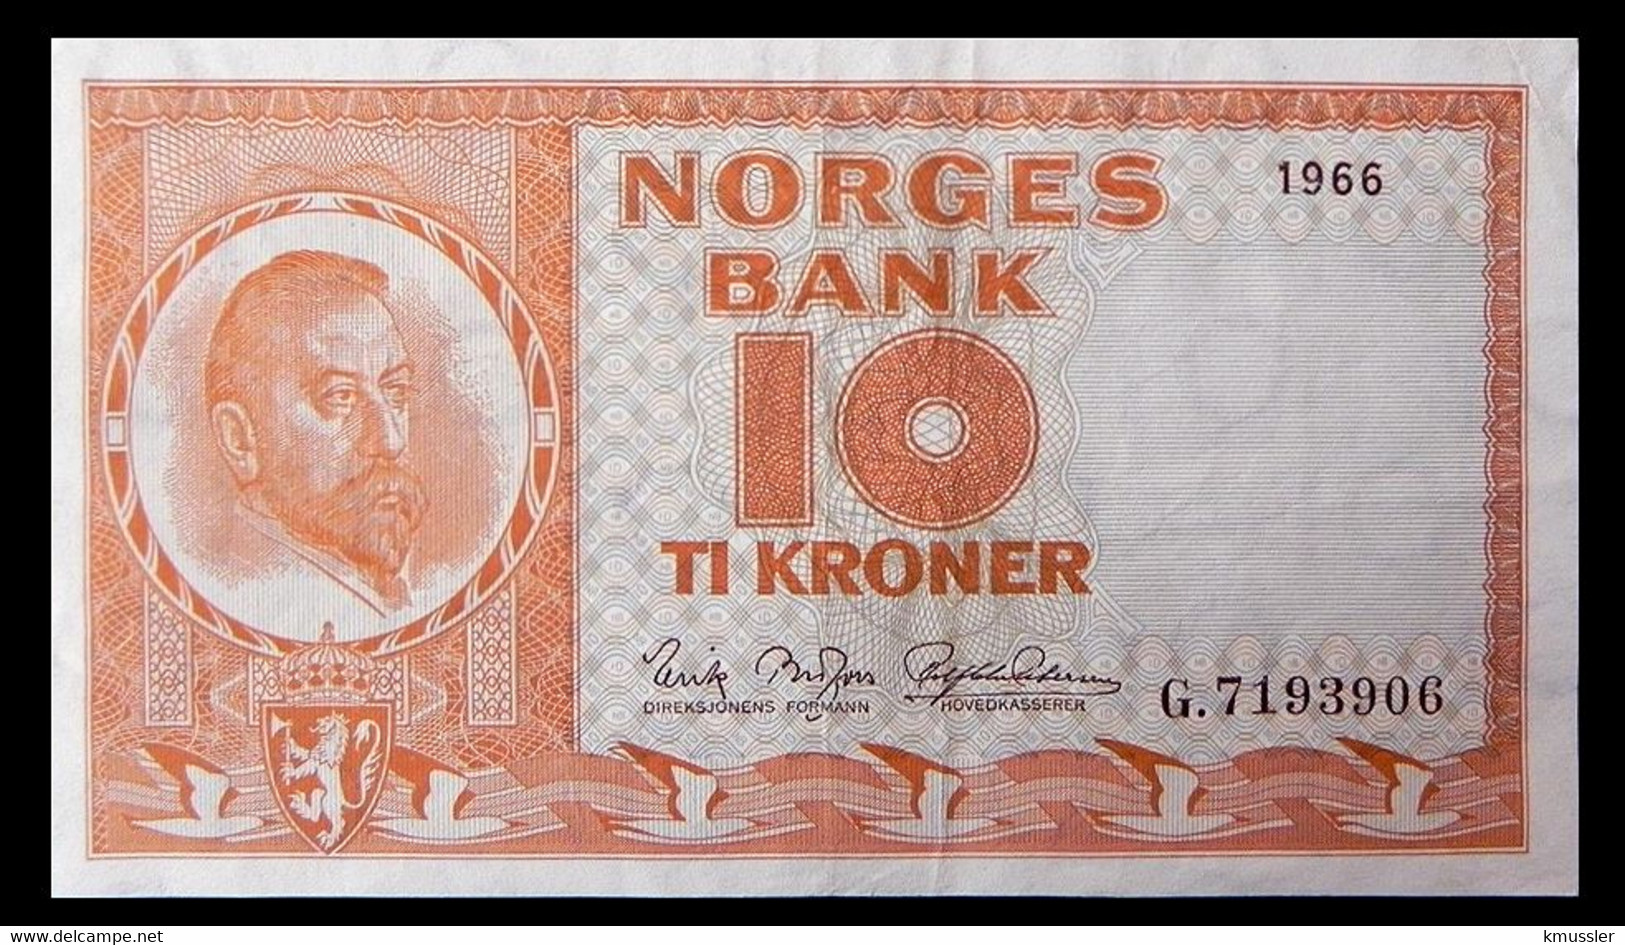 # # # Banknote Norwegen (Norway) 10 Kroner 1966 # # # - Norway